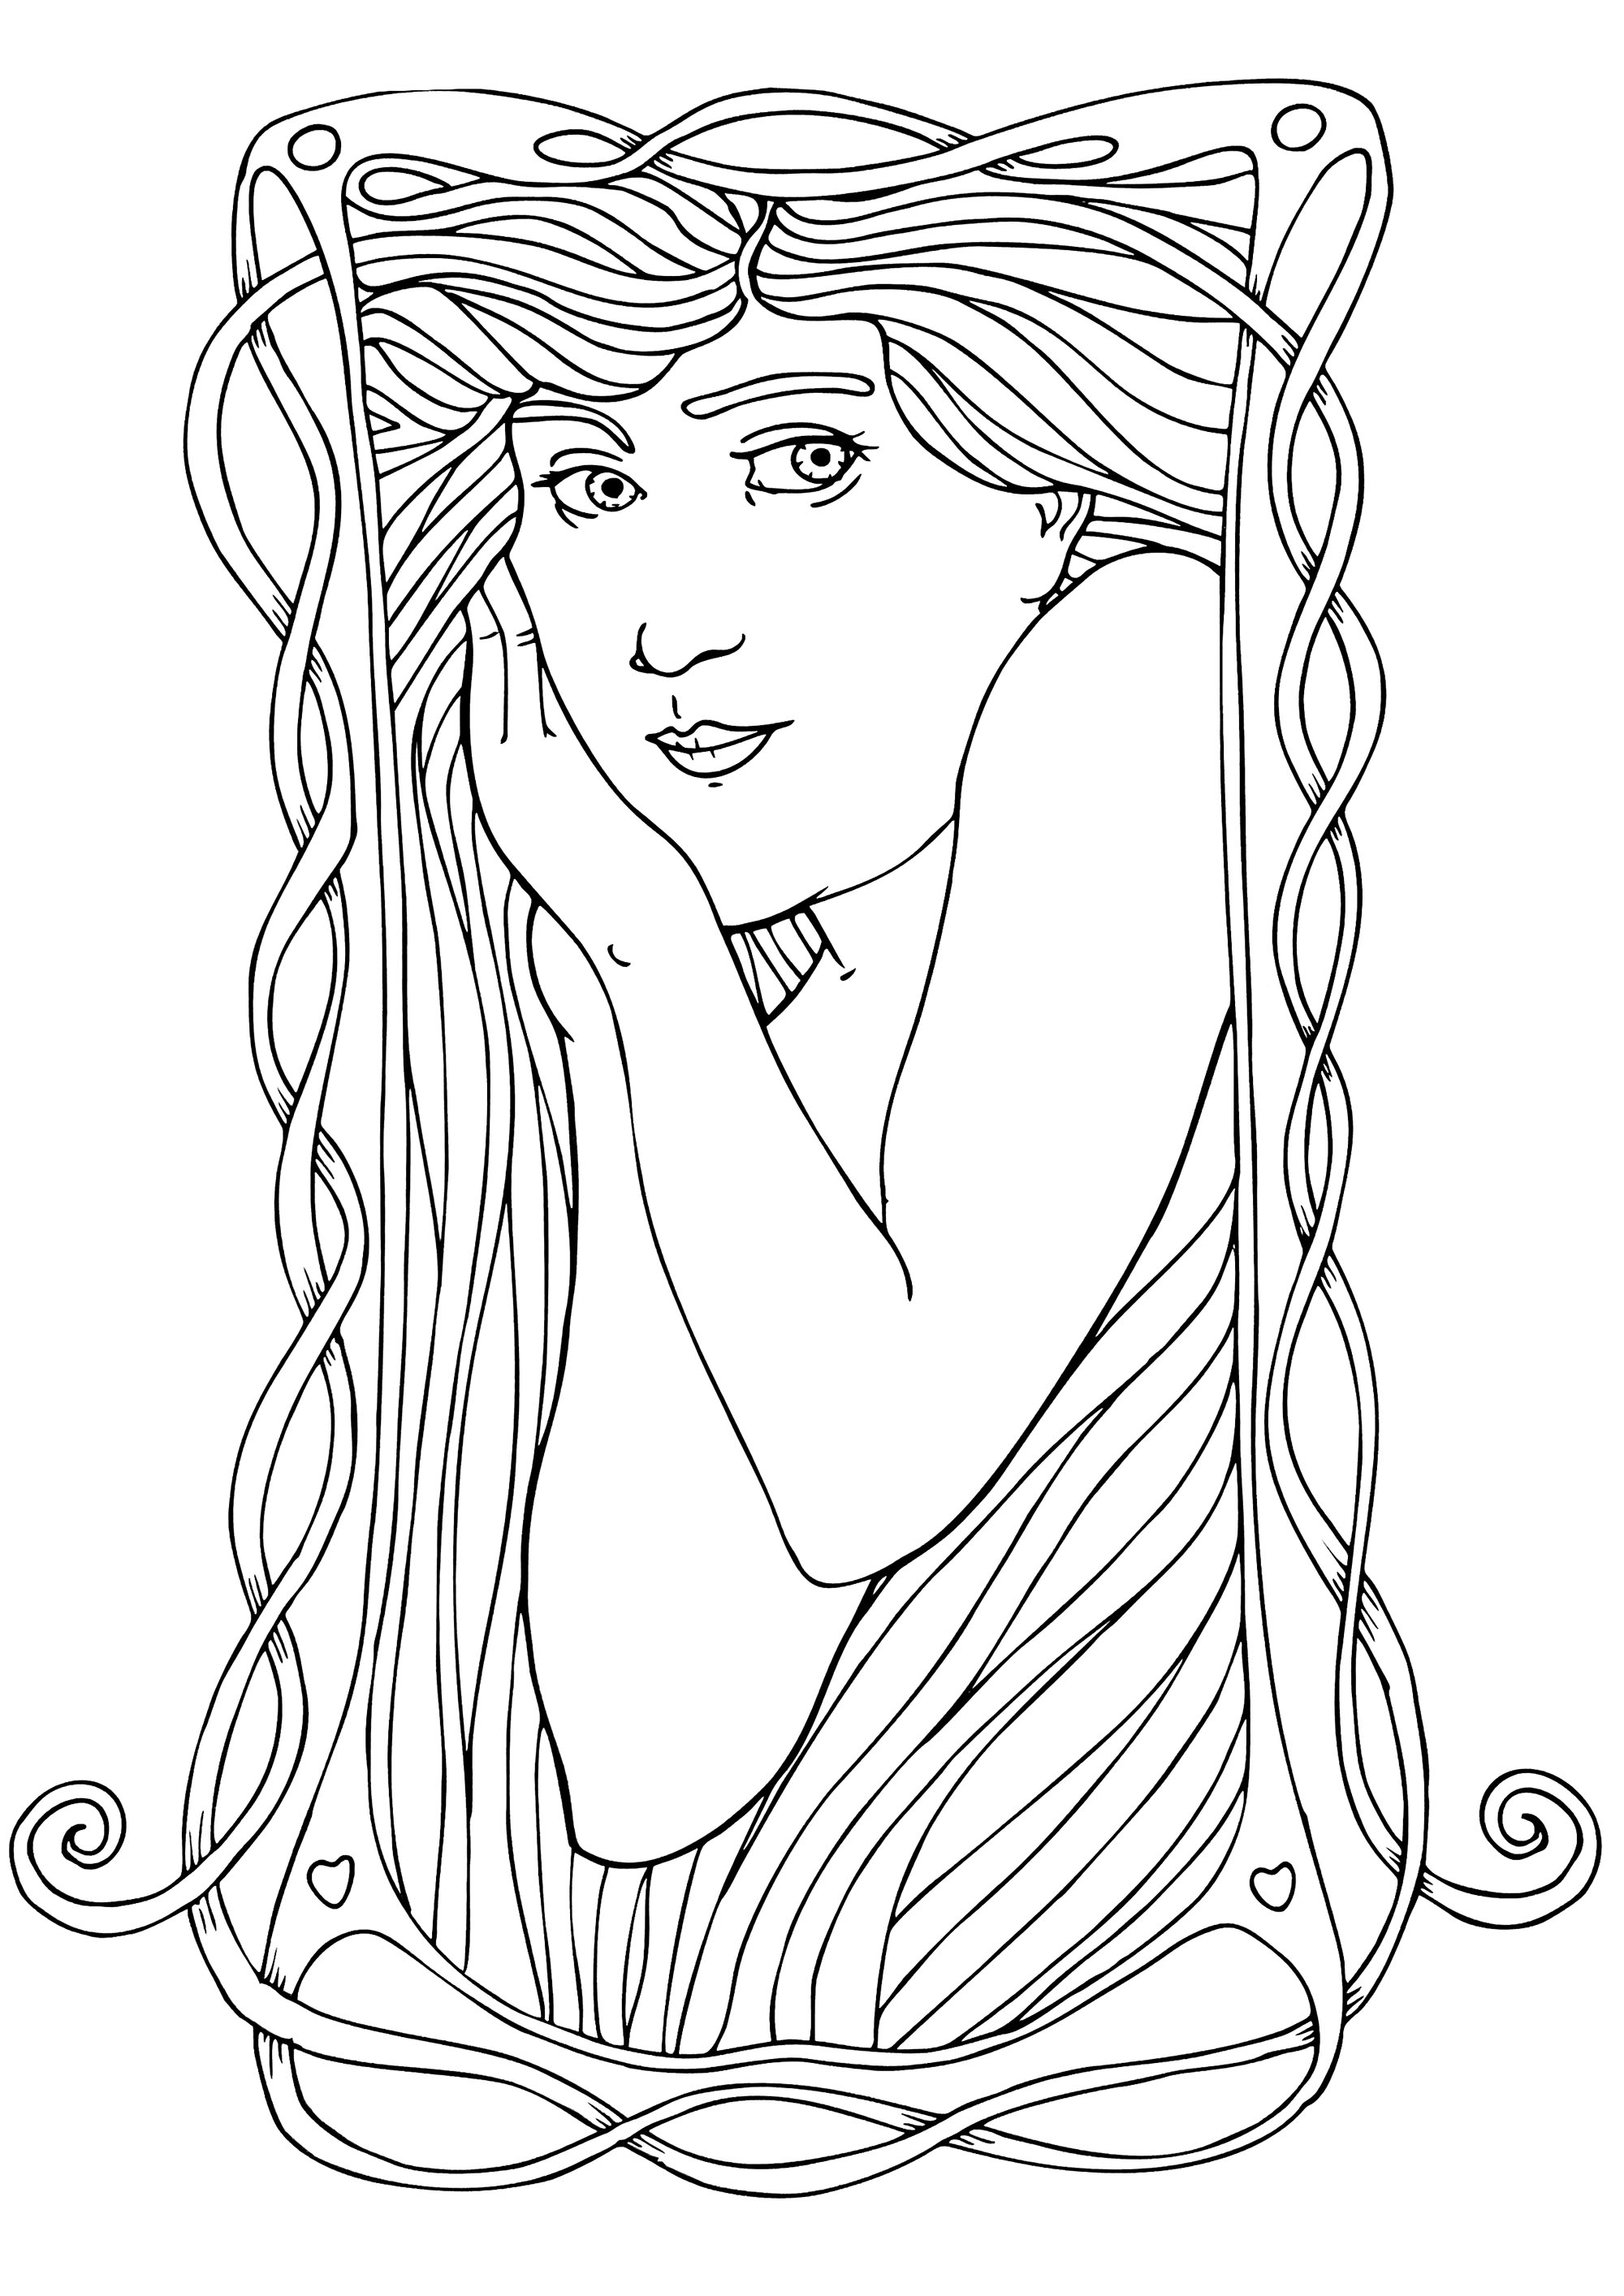 Donna in stile liberty - Semplice. Rappresentazione di una donna in stile Art Nouveau, che riproduce lo stile di Alfons Mucha, con pochi dettagli, Artista : Art'Isabelle